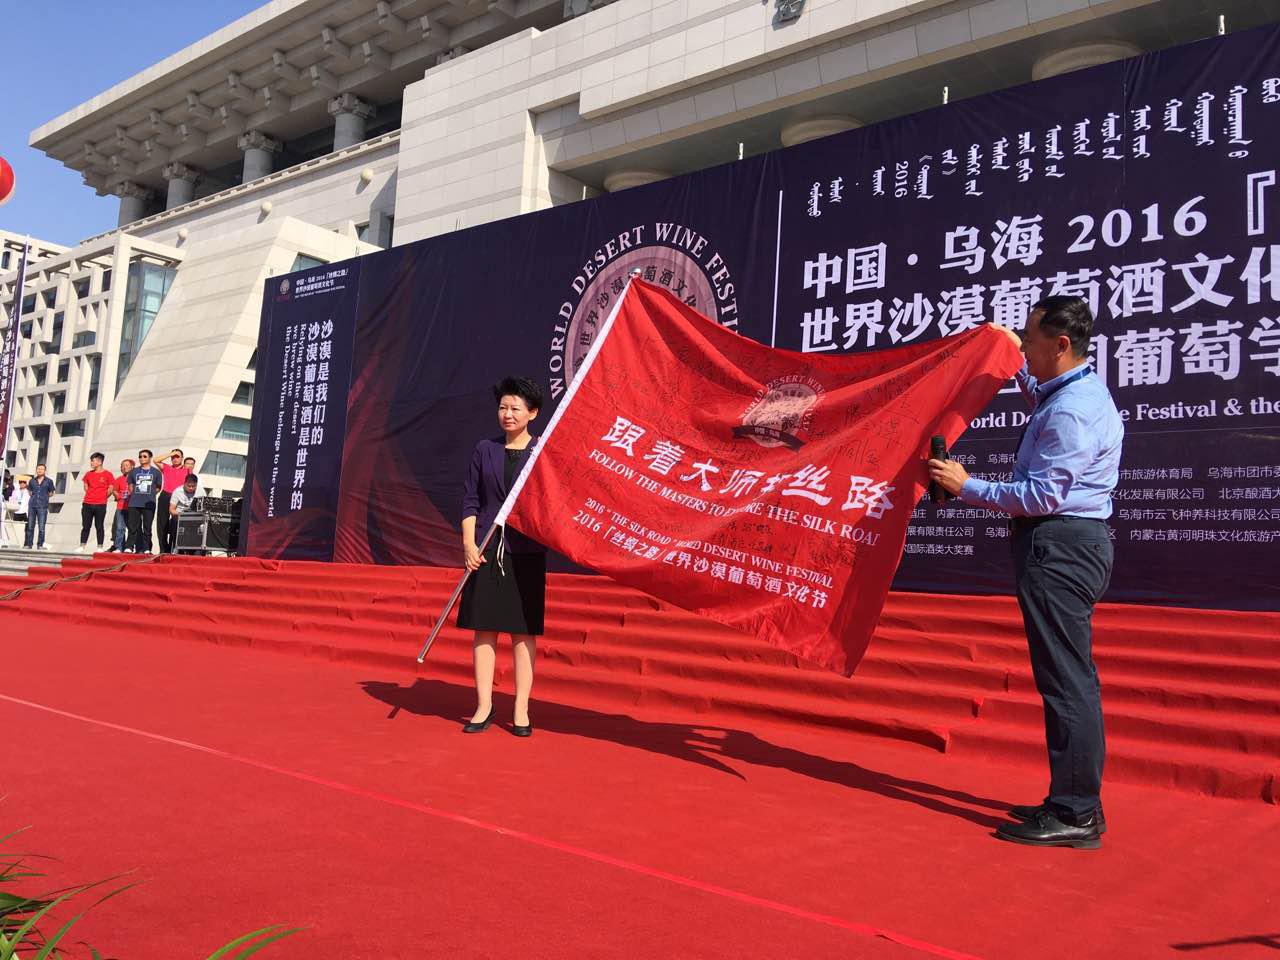 葡萄酒专家郭松泉向冀晓青副市长移交“跟着大师探丝路”队旗